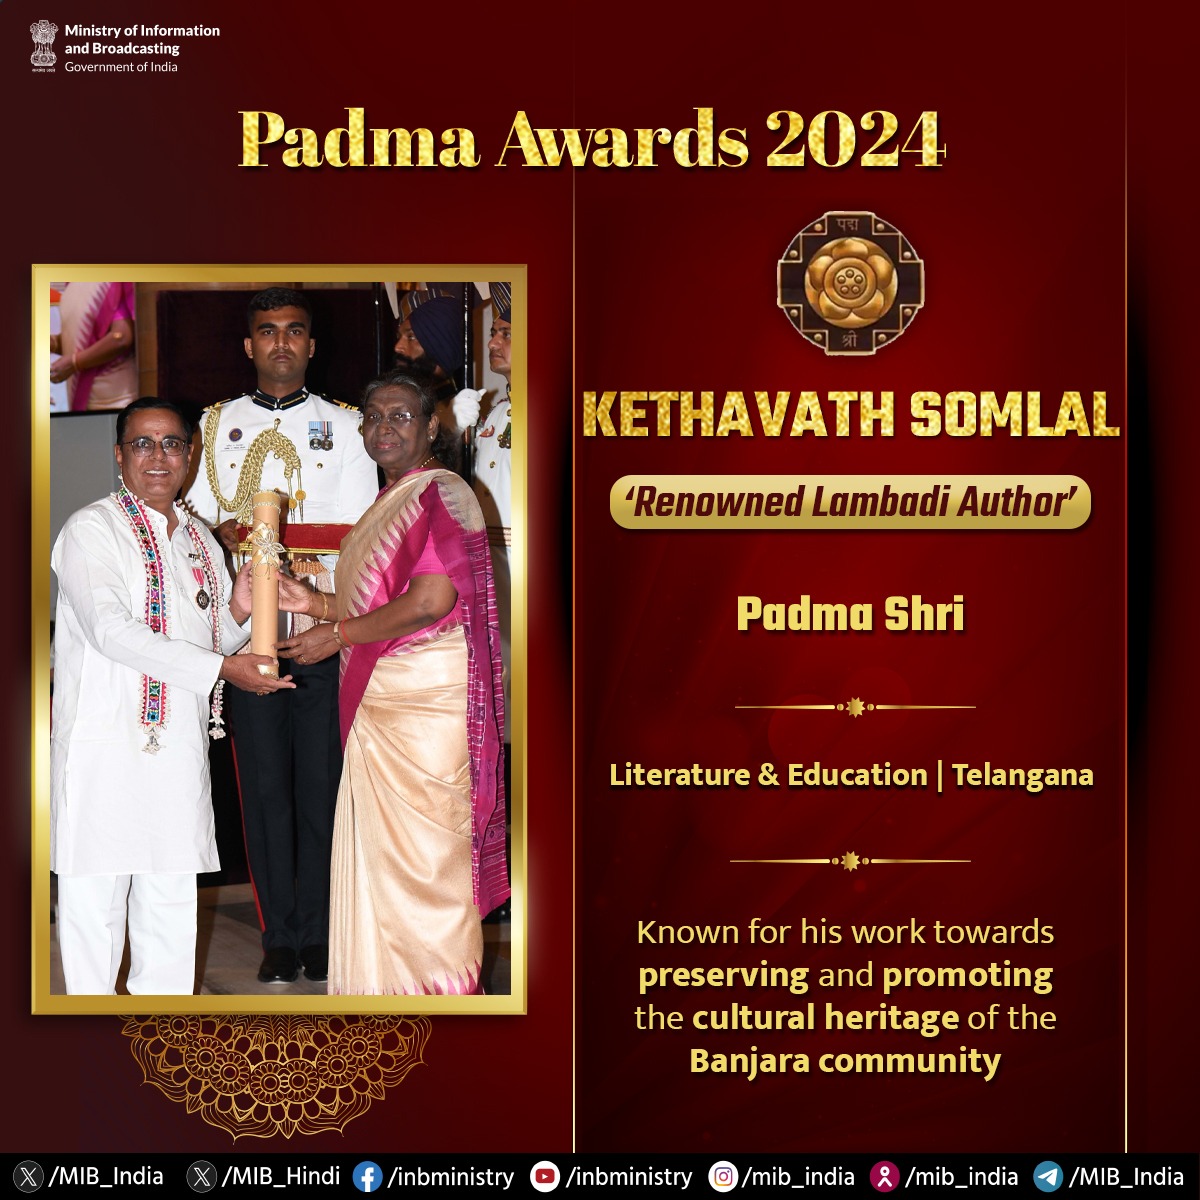 #PadmaAwards2024 - Kethavath Somlal 🏅Padma Shri - Literature & Education 📍#Telangana 🔹Renowned Lambadi Author 🔹Known for his work towards preserving and promoting the cultural heritage of the Banjara community #PadmaAwards #PeoplesPadma #PadmaShri